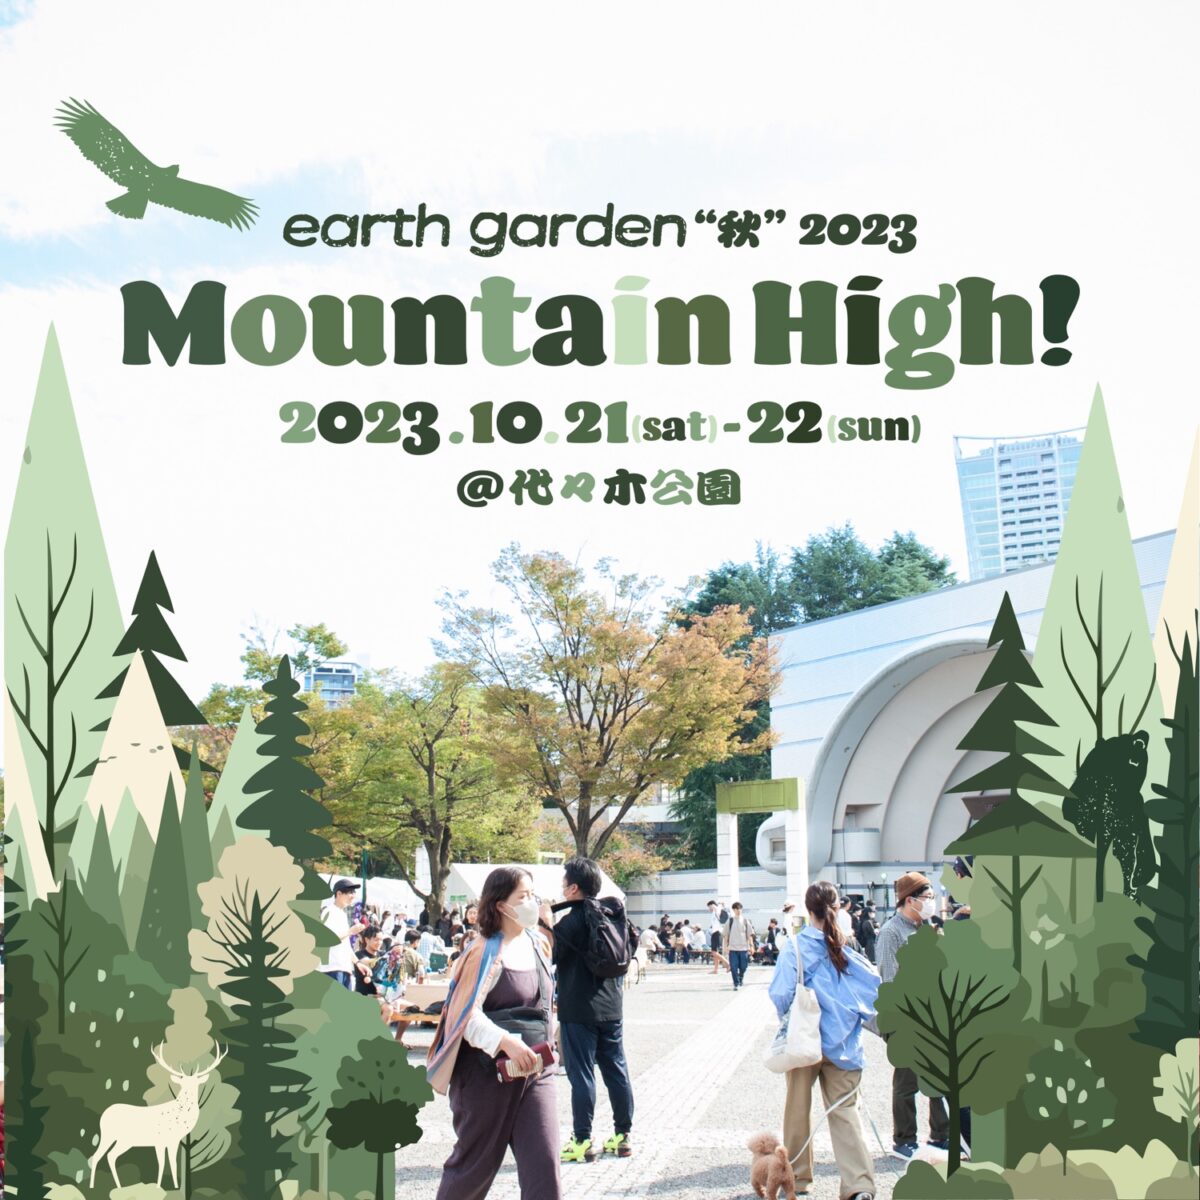 【アースガーデン秋】earth garden ”秋” 2023 Mountain High!!